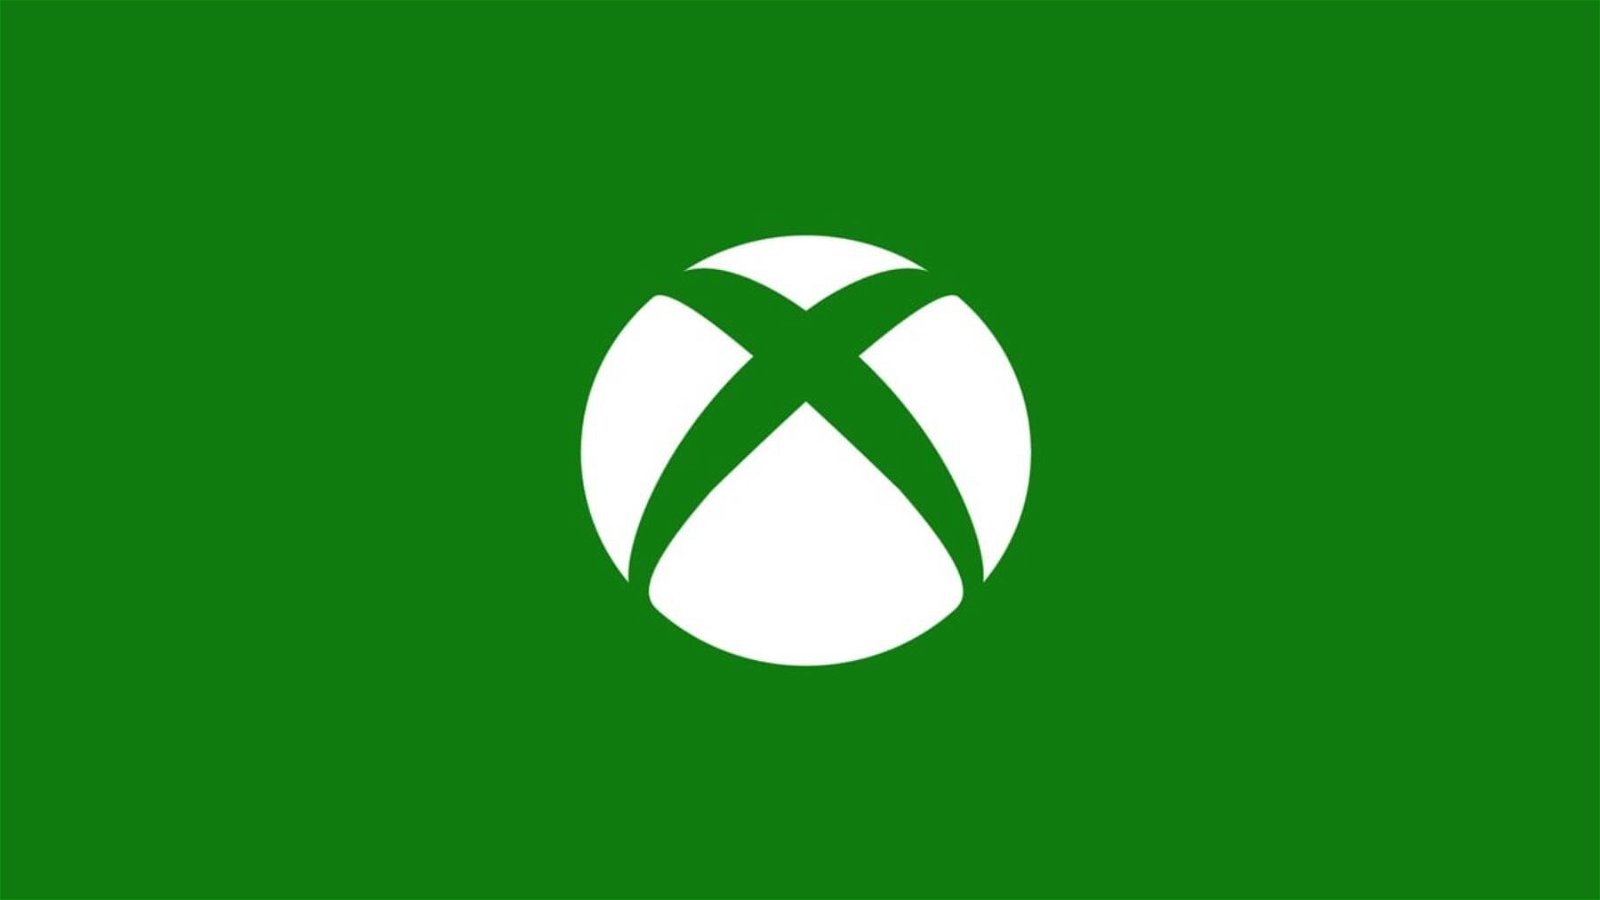 Xbox vi offre un nuovo gioco gratis, solo per il fine settimana